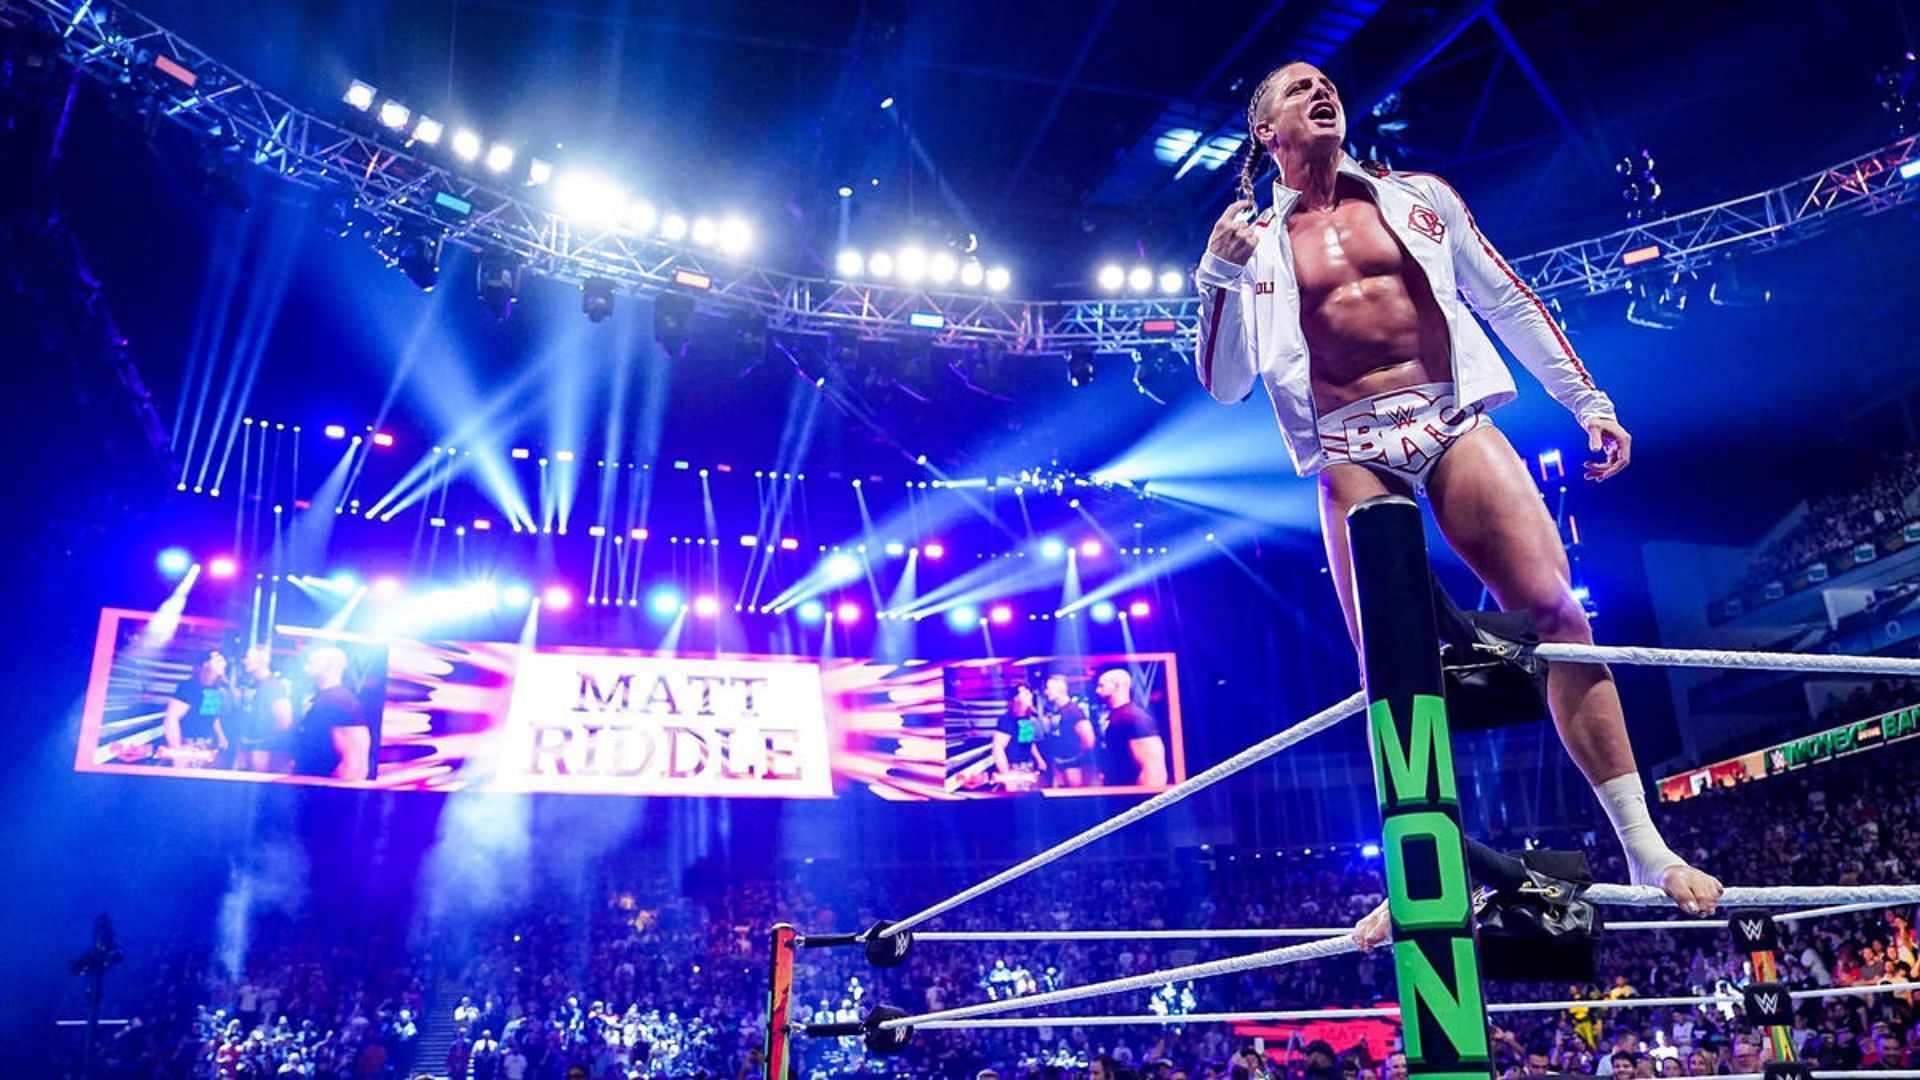 Matt Riddle was a controversial WWE Superstar.